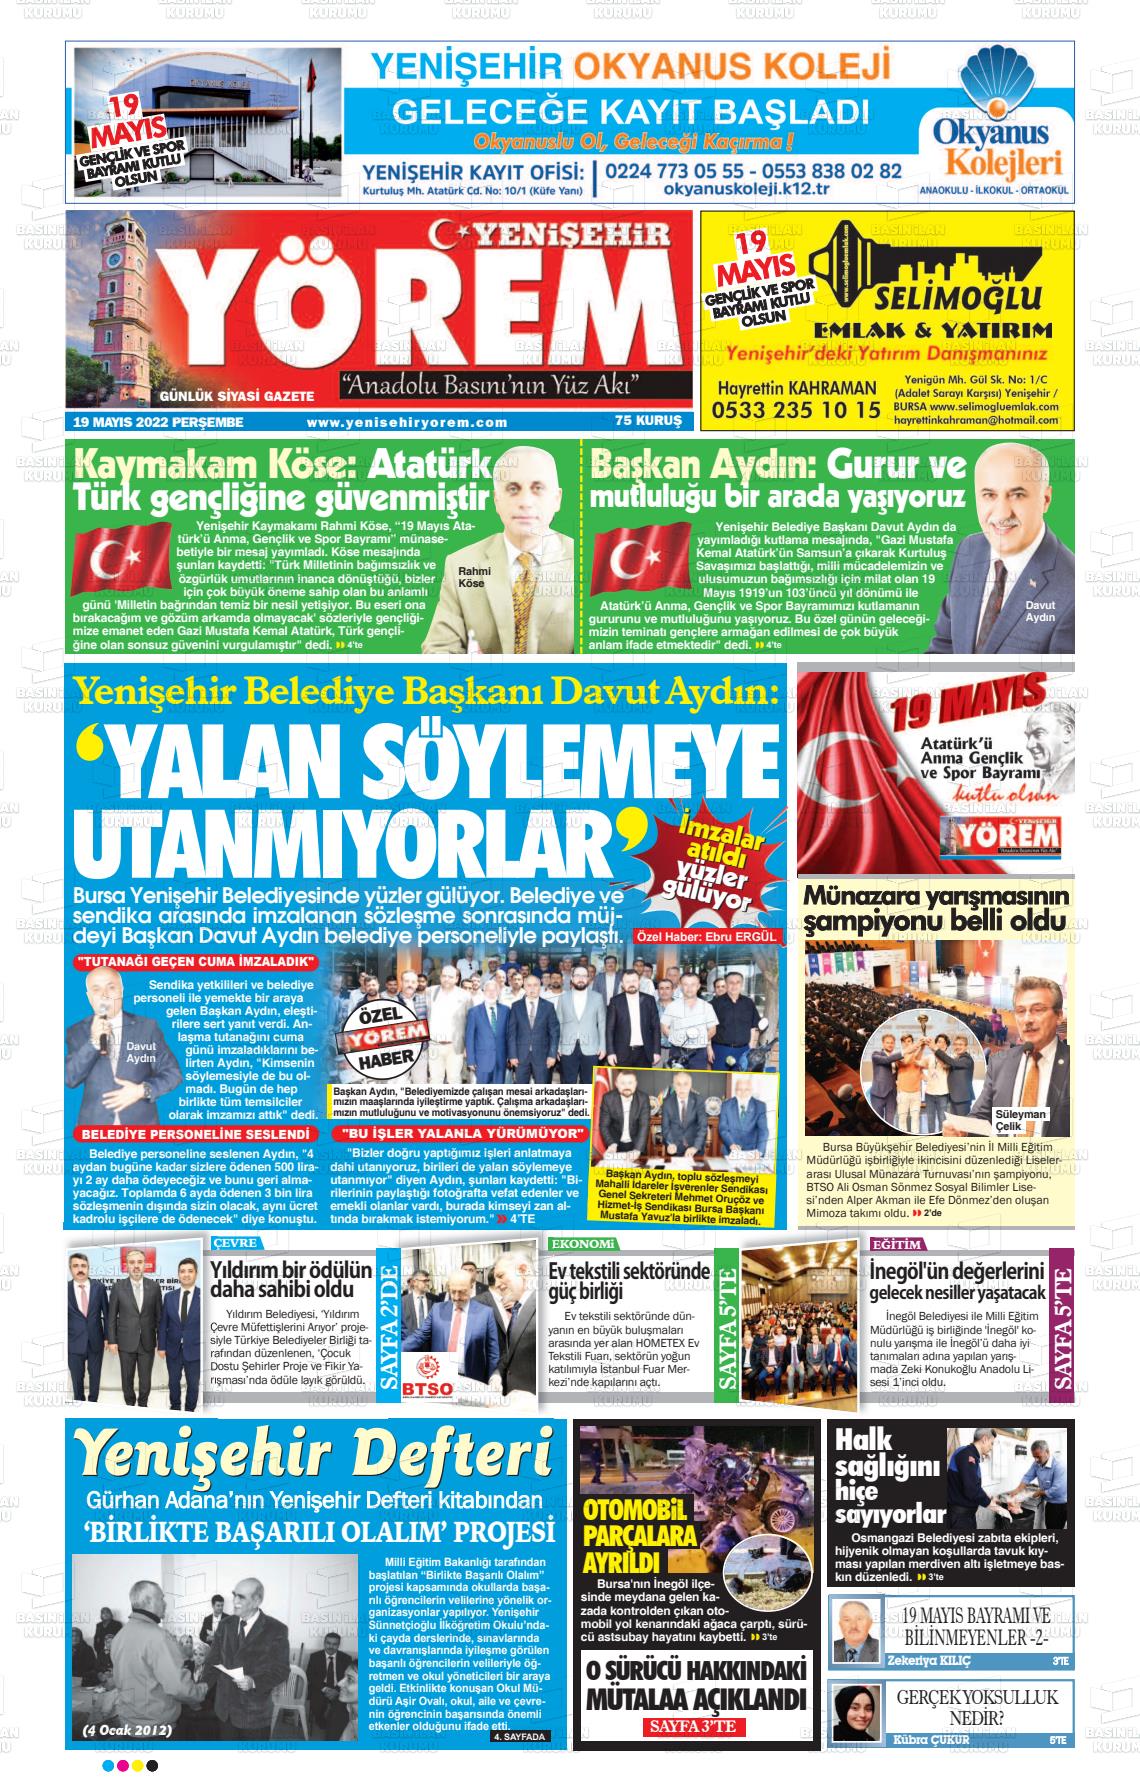 19 Mayıs 2022 Yenişehir Yörem Gazete Manşeti